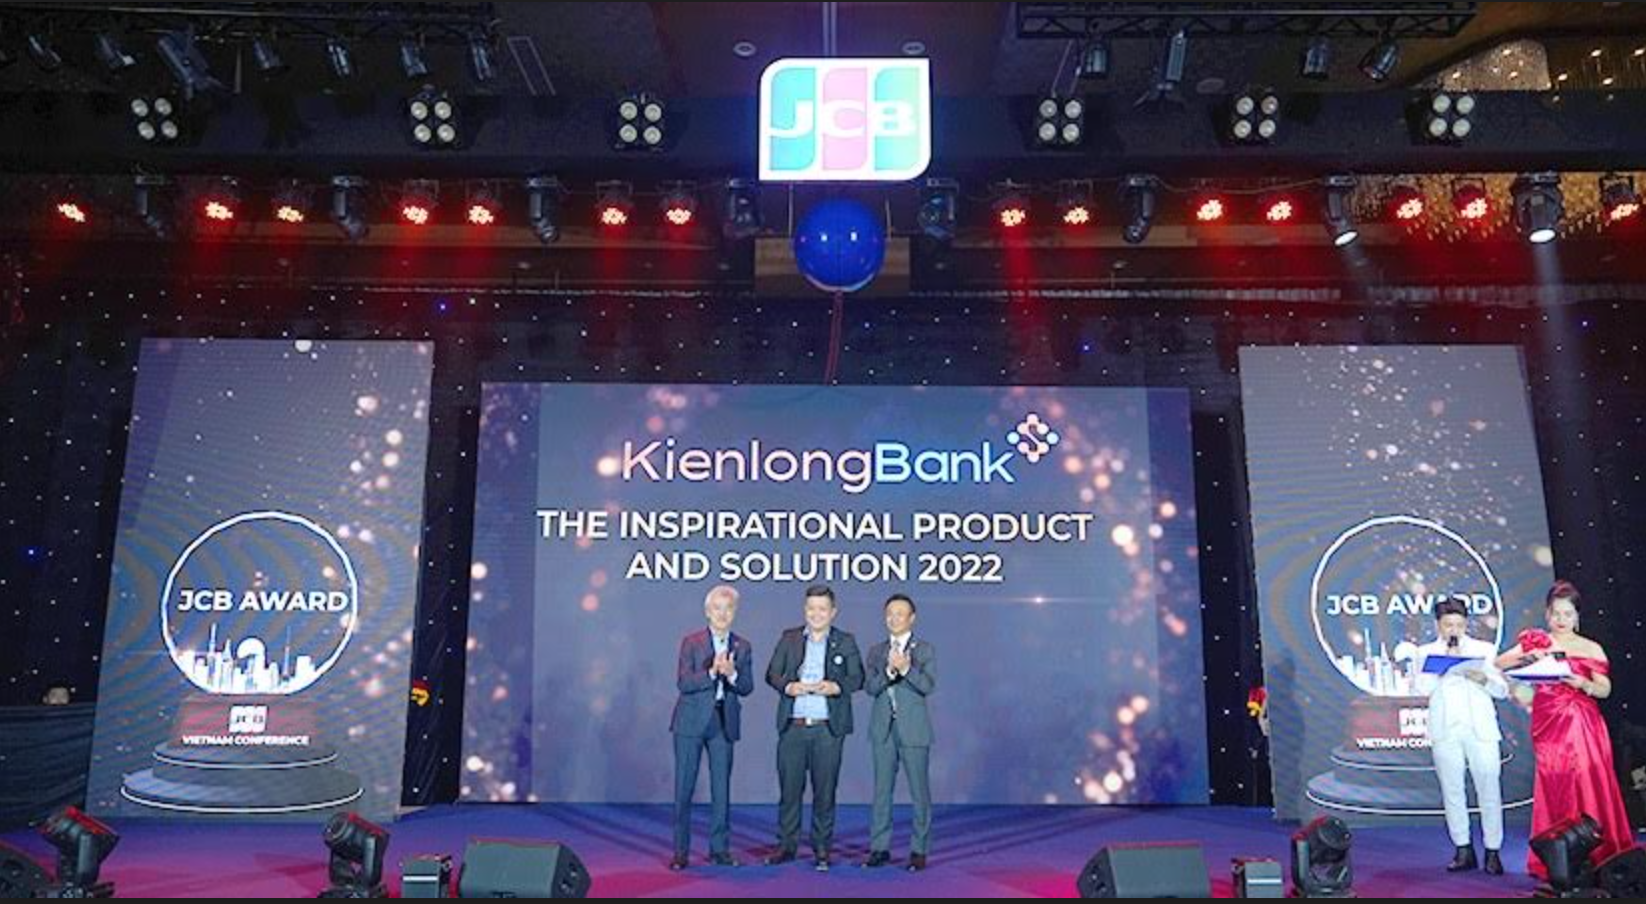 trong thời gian tới, KienlongBank sẽ tiếp tục phối hợp với các đối tác để mang thêm nhiều dịch vụ thẻ mới